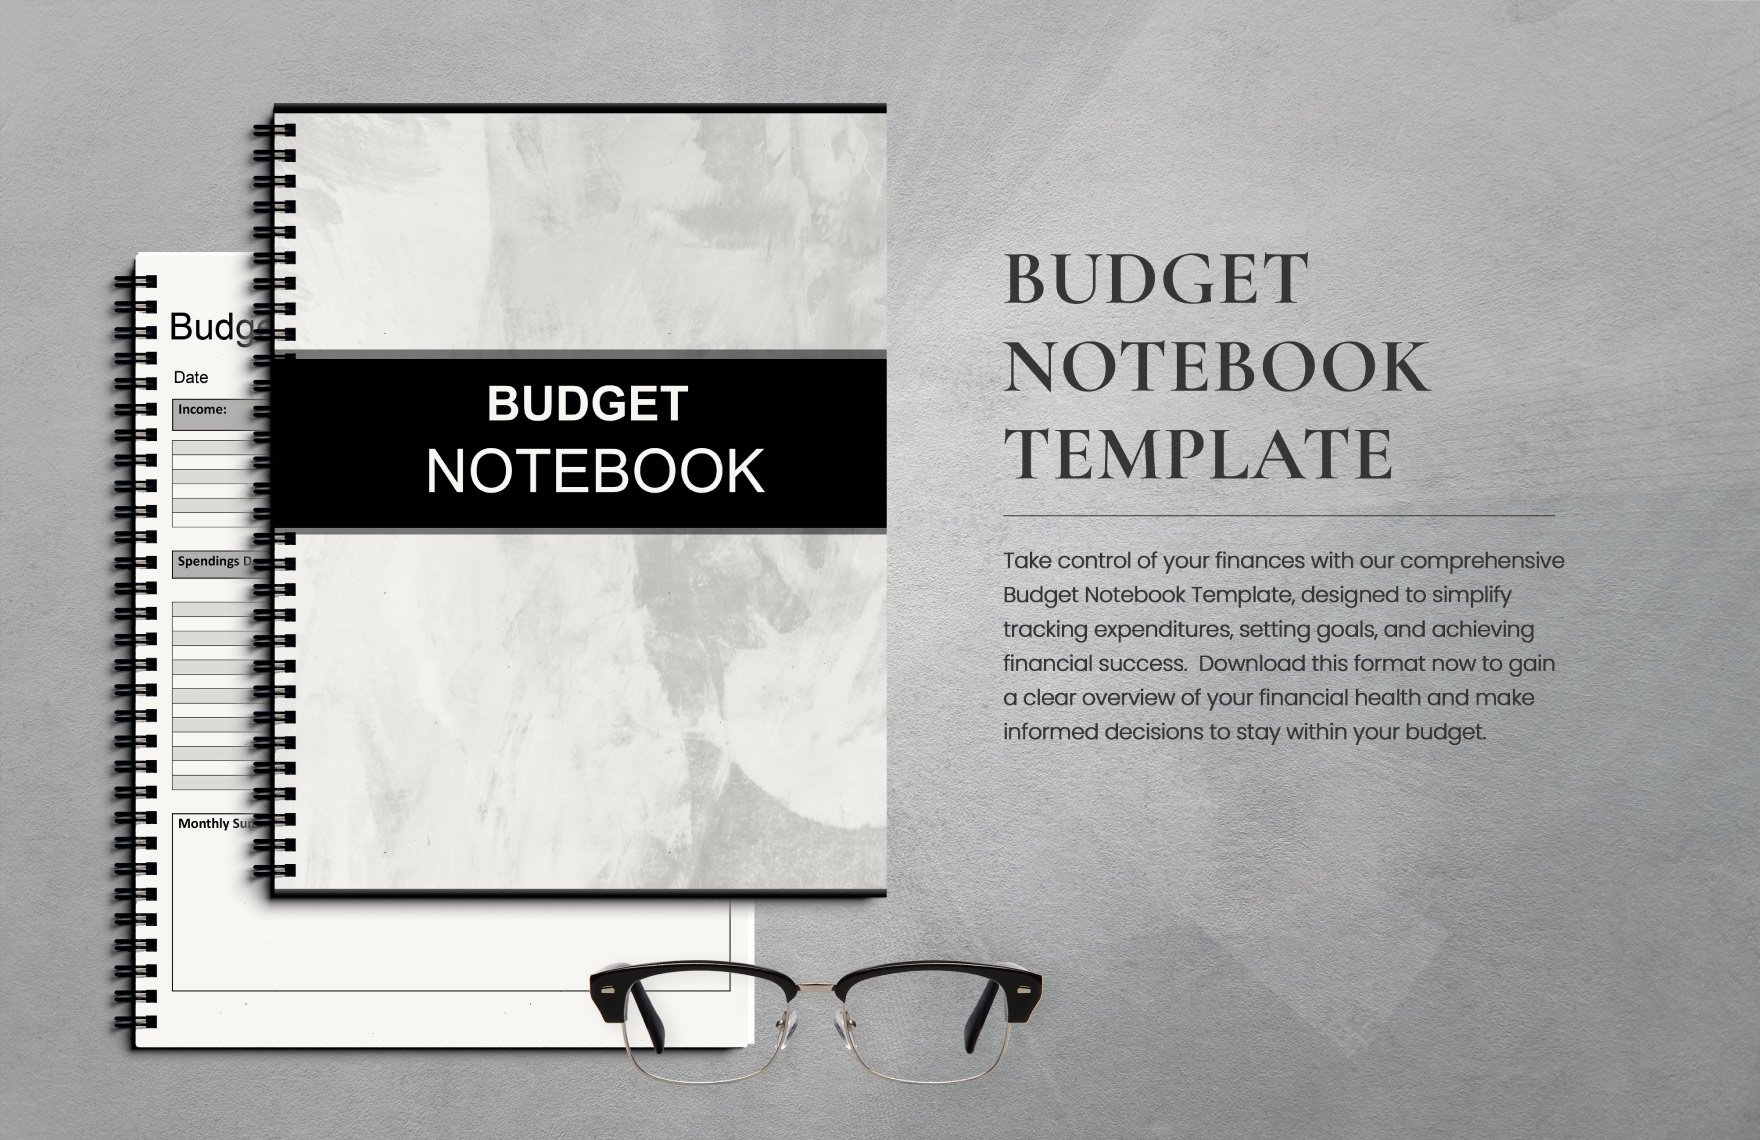 Budget Notebook Template